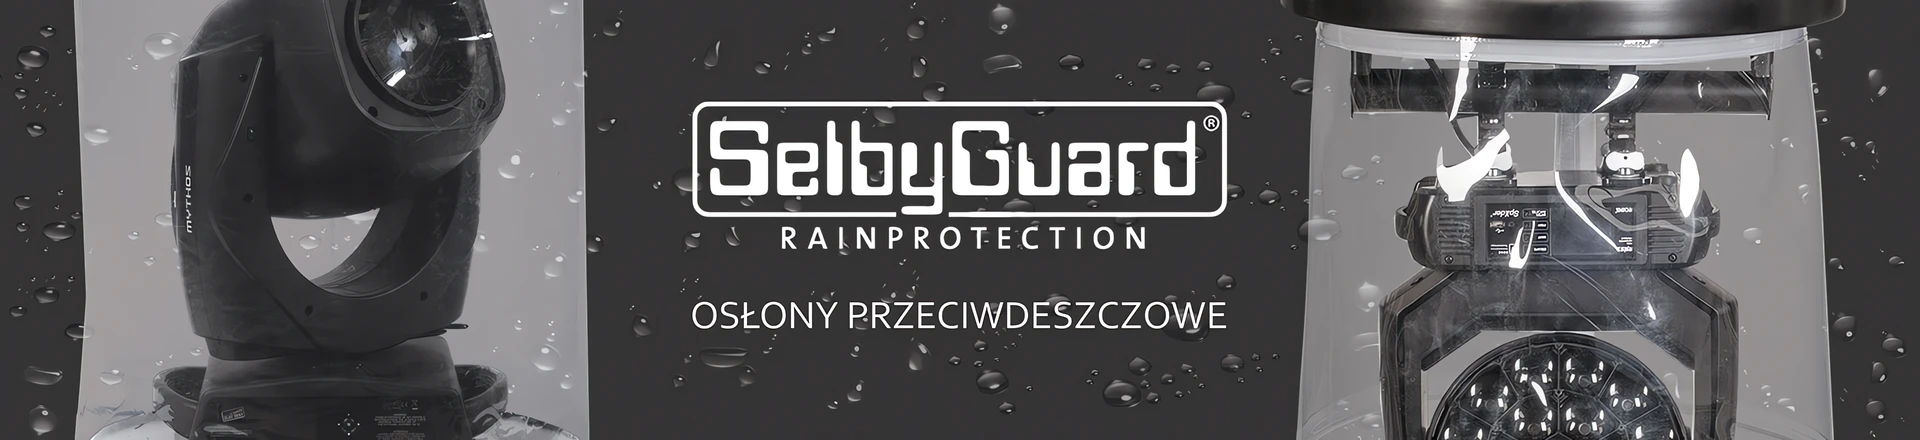 Osłony przeciwdeszczowe SelbyGuard dostępne w ofercie Liteshop.pl